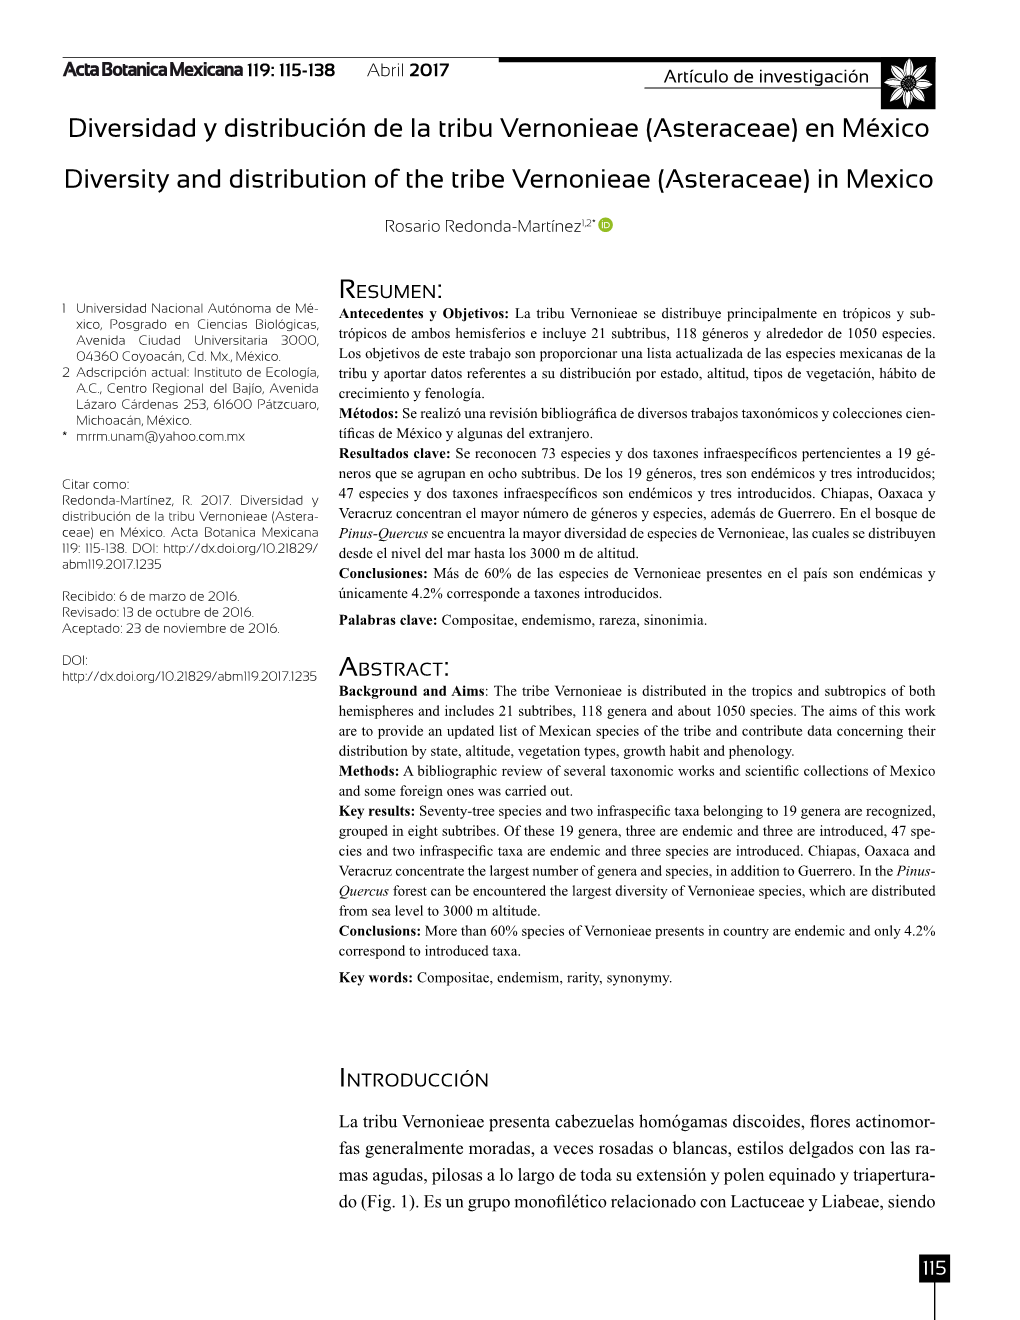 Diversidad Y Distribución De La Tribu Vernonieae (Asteraceae) En México Diversity and Distribution of the Tribe Vernonieae (Asteraceae) in Mexico